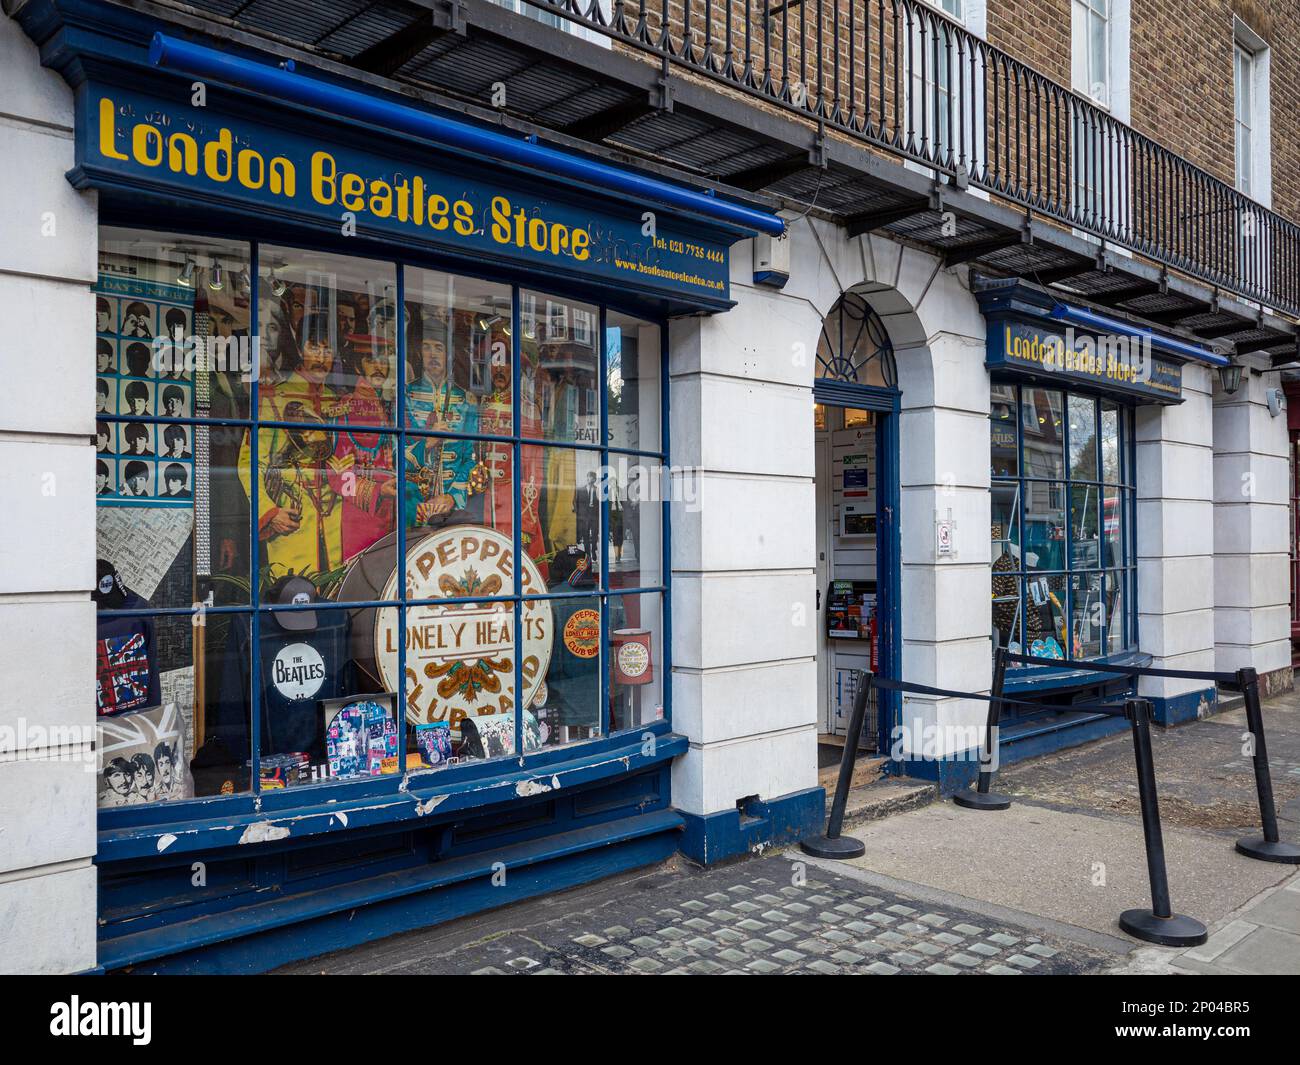 London Beatles Store Baker St London - negozio di souvenir Beatles situato al 231-233 di Baker St nel centro di Londra Foto Stock